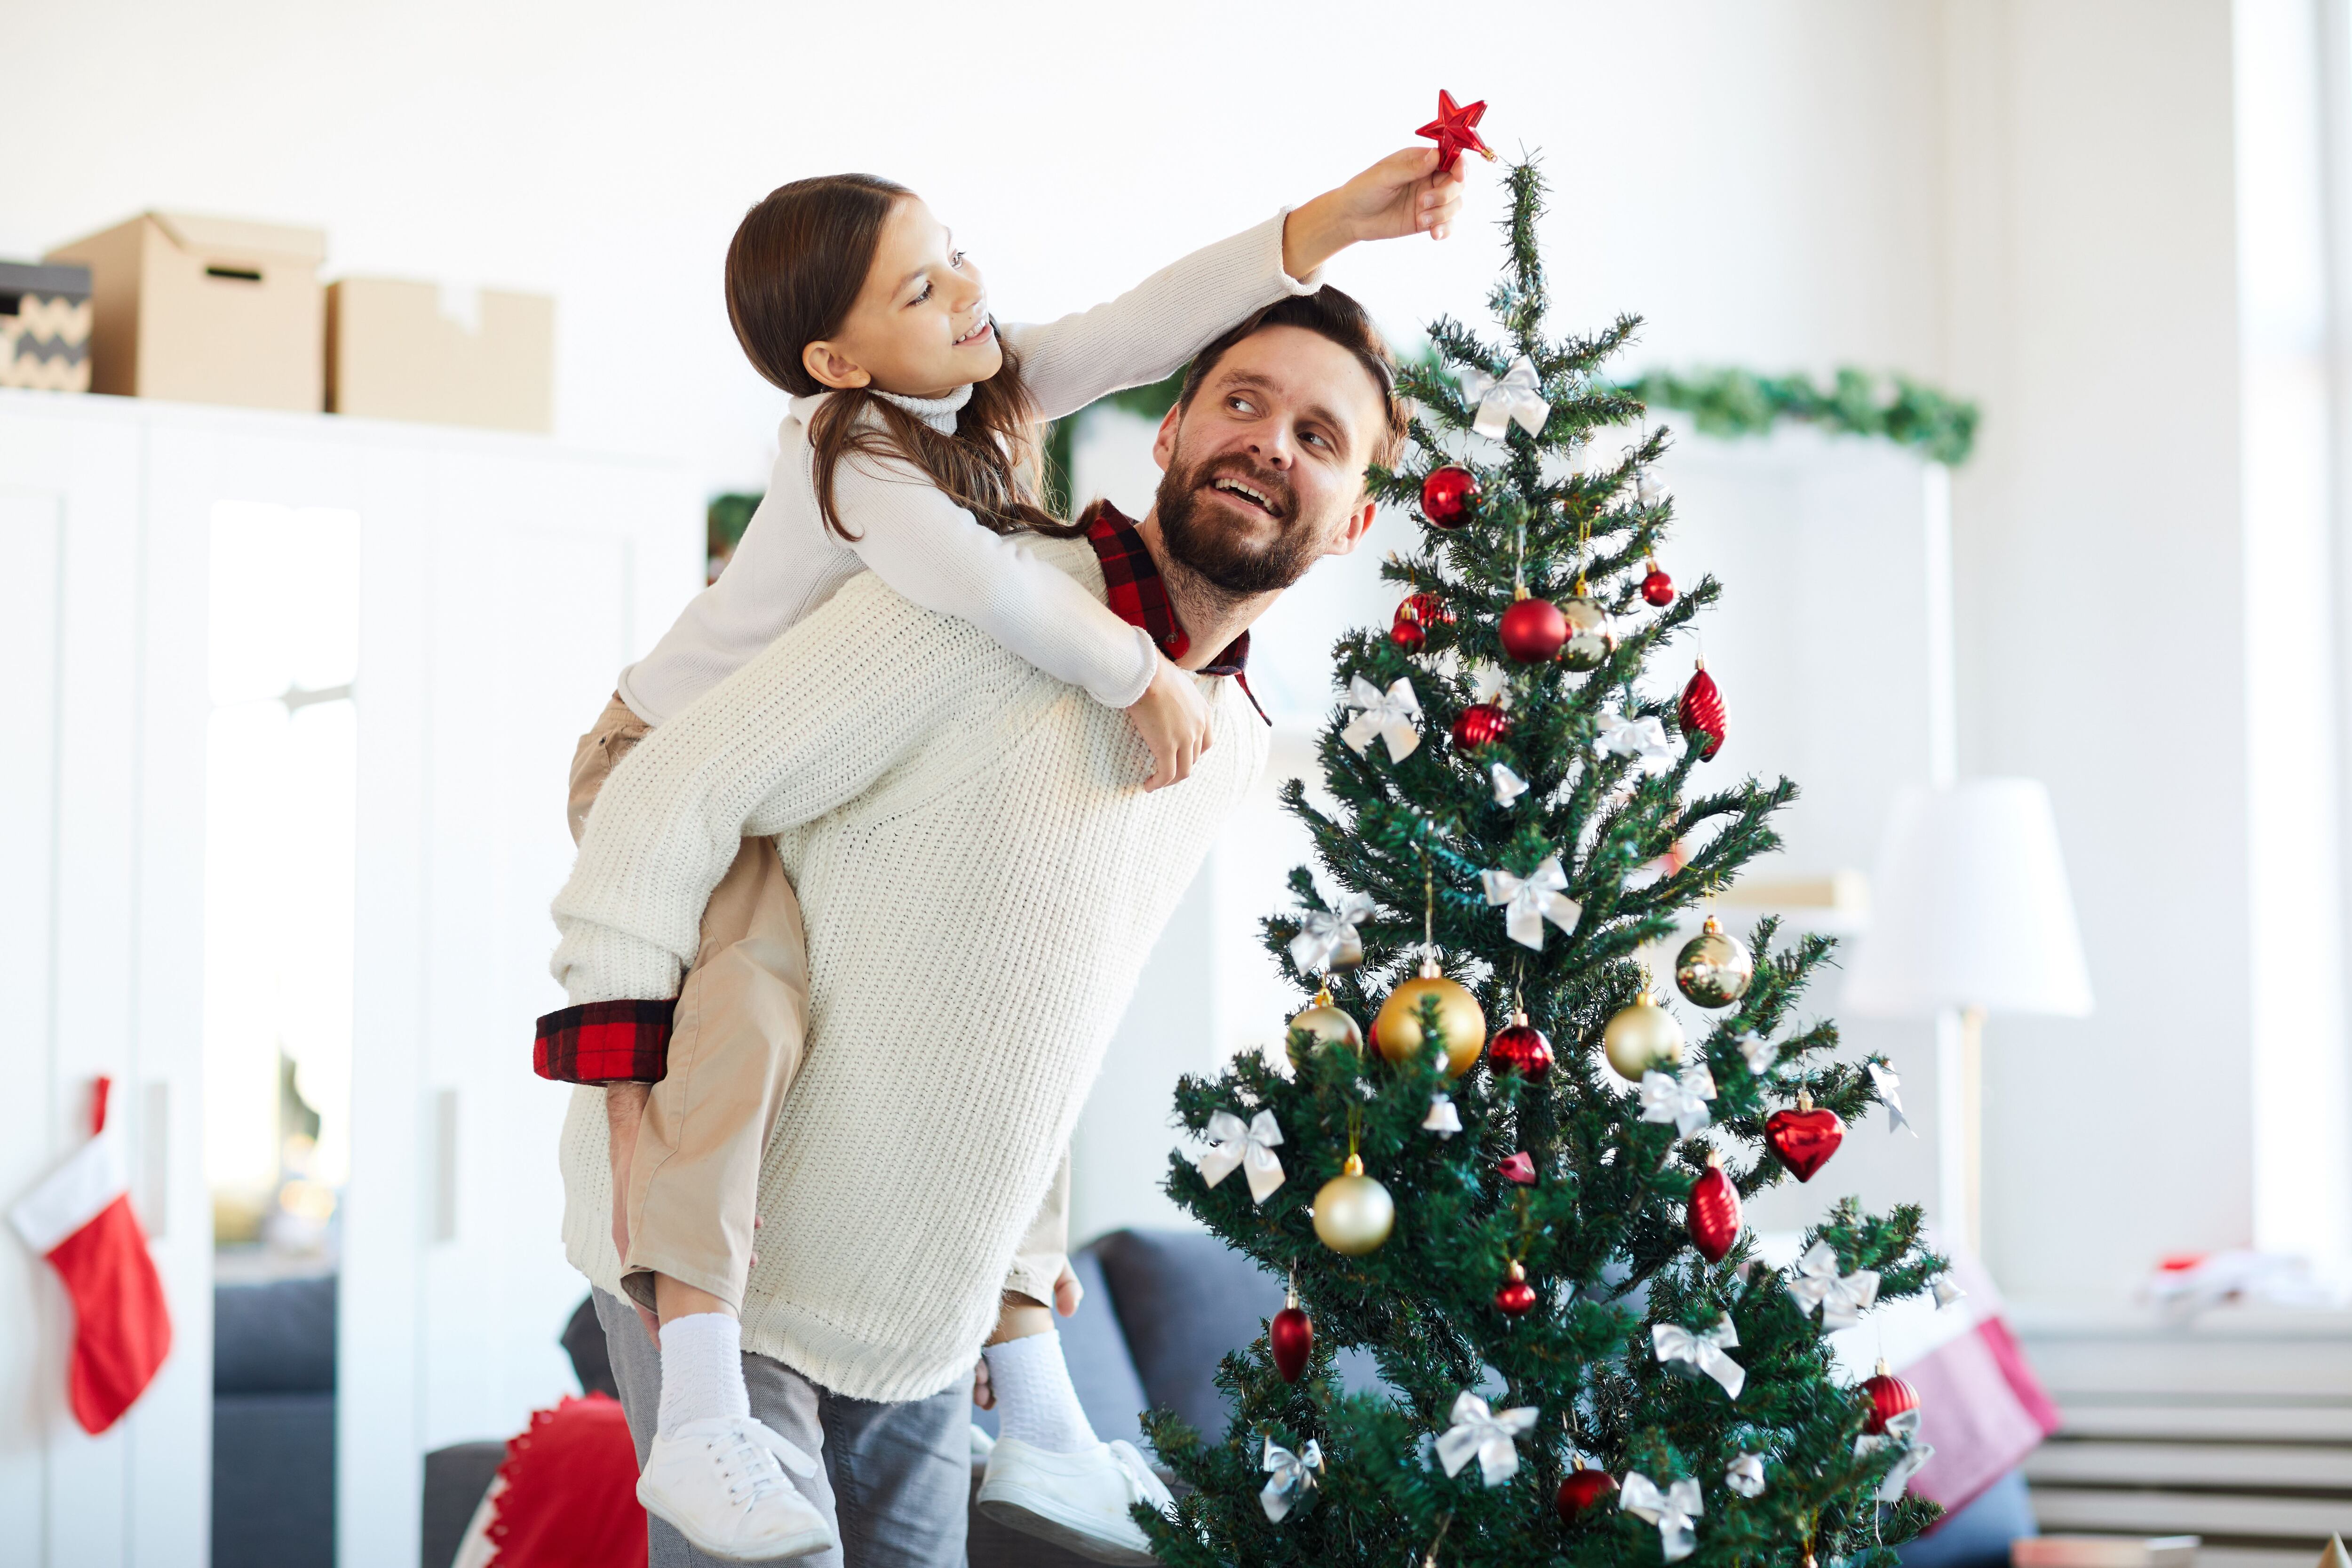 Decorar juntos para la temporada navideña es un tiempo memorable para niños y padres.